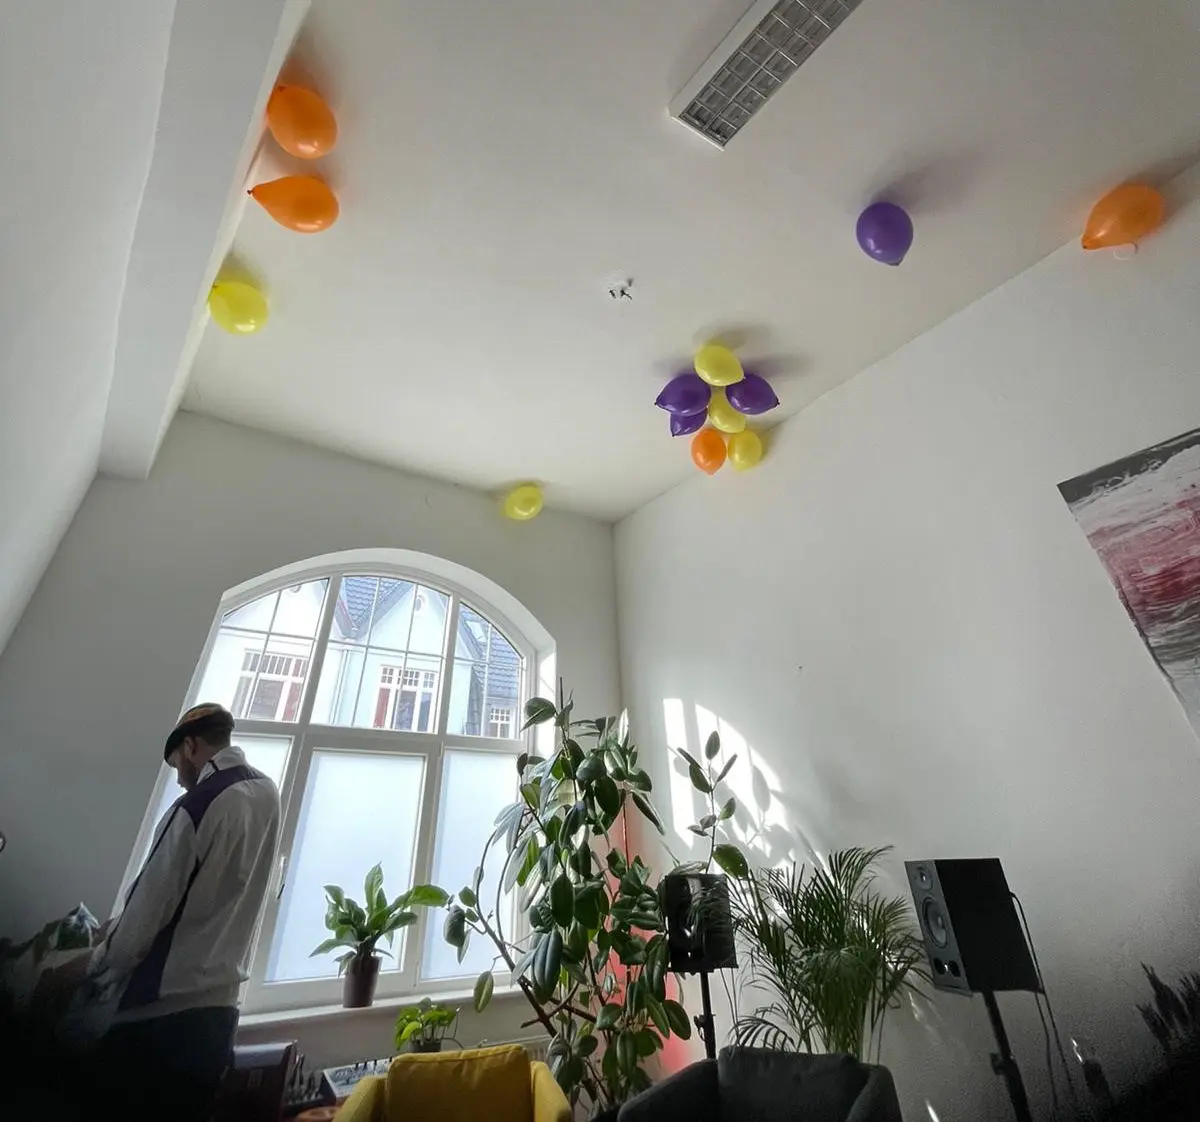 Das neue Büro bietet viel Platz; nicht nur für Luftballons, sondern auch für viel Menschlichkeit und tolle Ideen